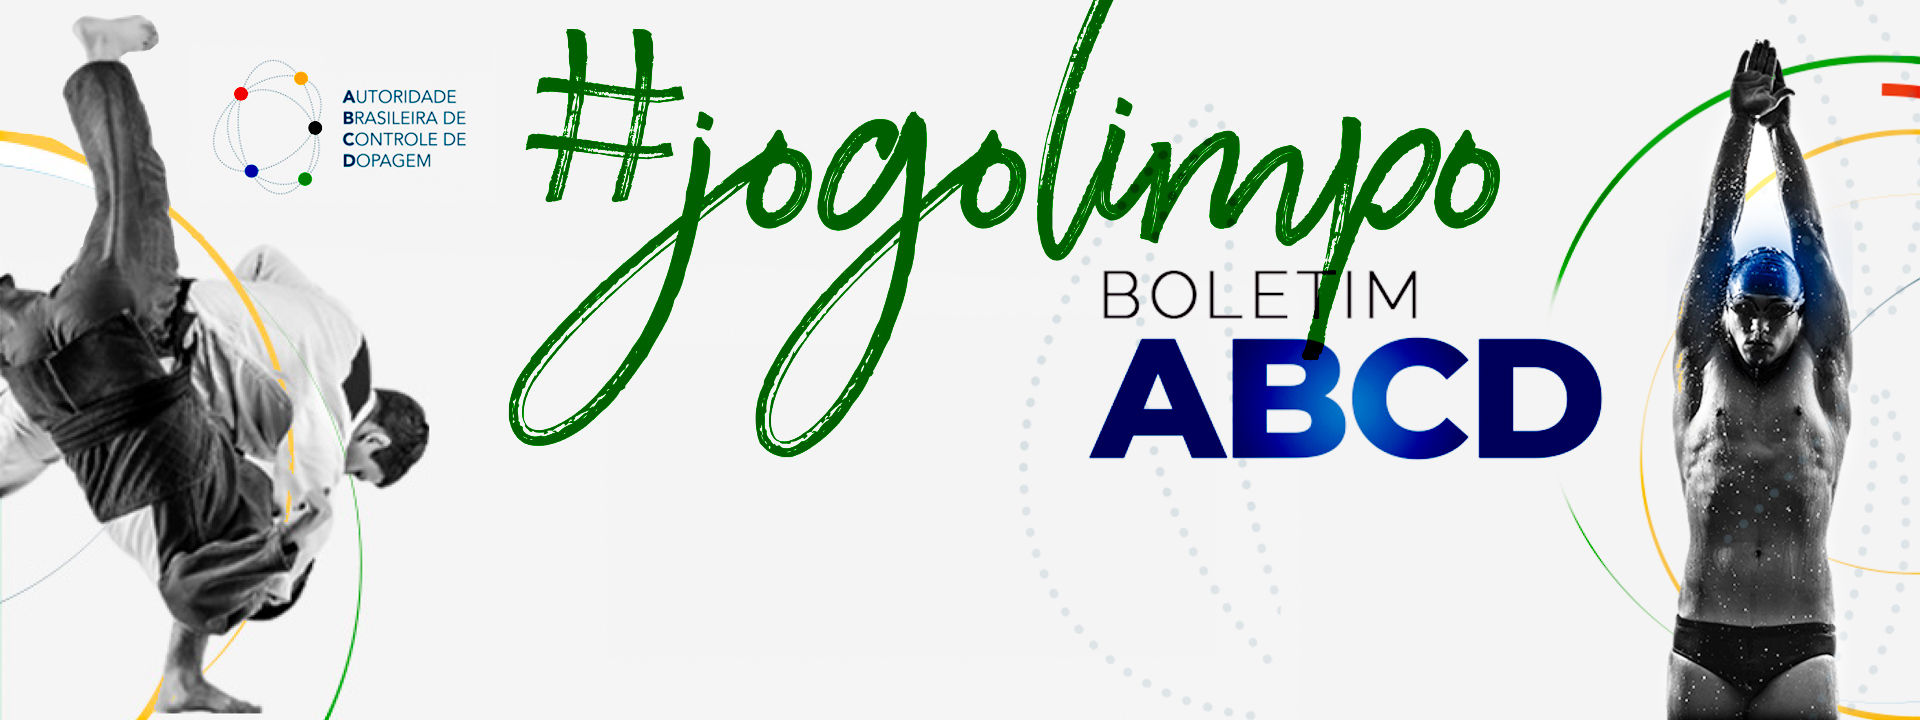 Autoridade Brasileira de Controle de Dopagem – ABCD lança boletim do mês de outubro